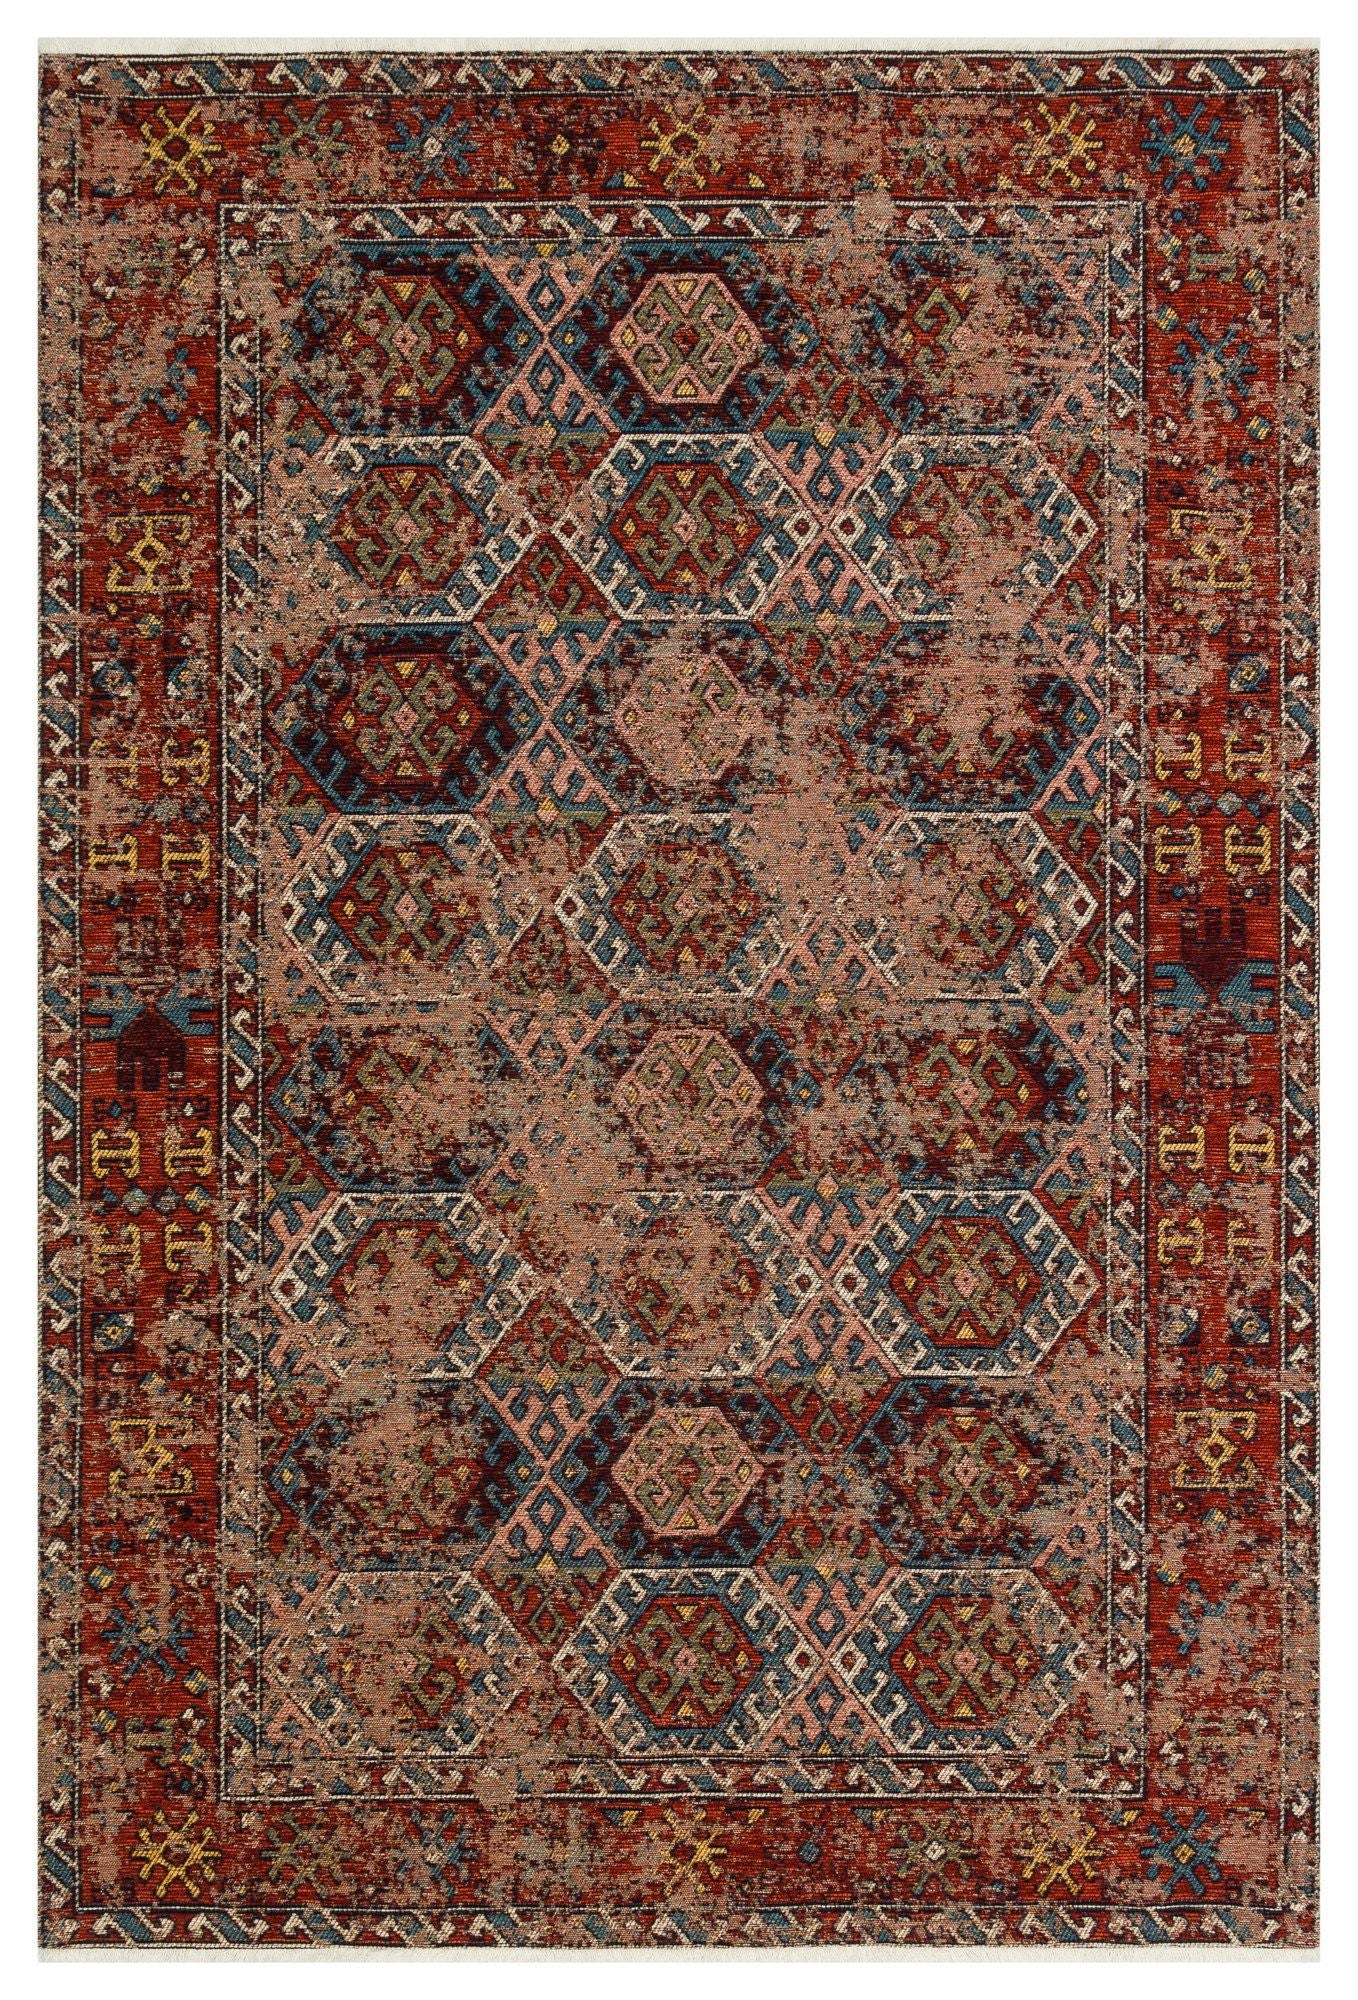 Anadolu - 0029 - Tæppe (160 x 230)